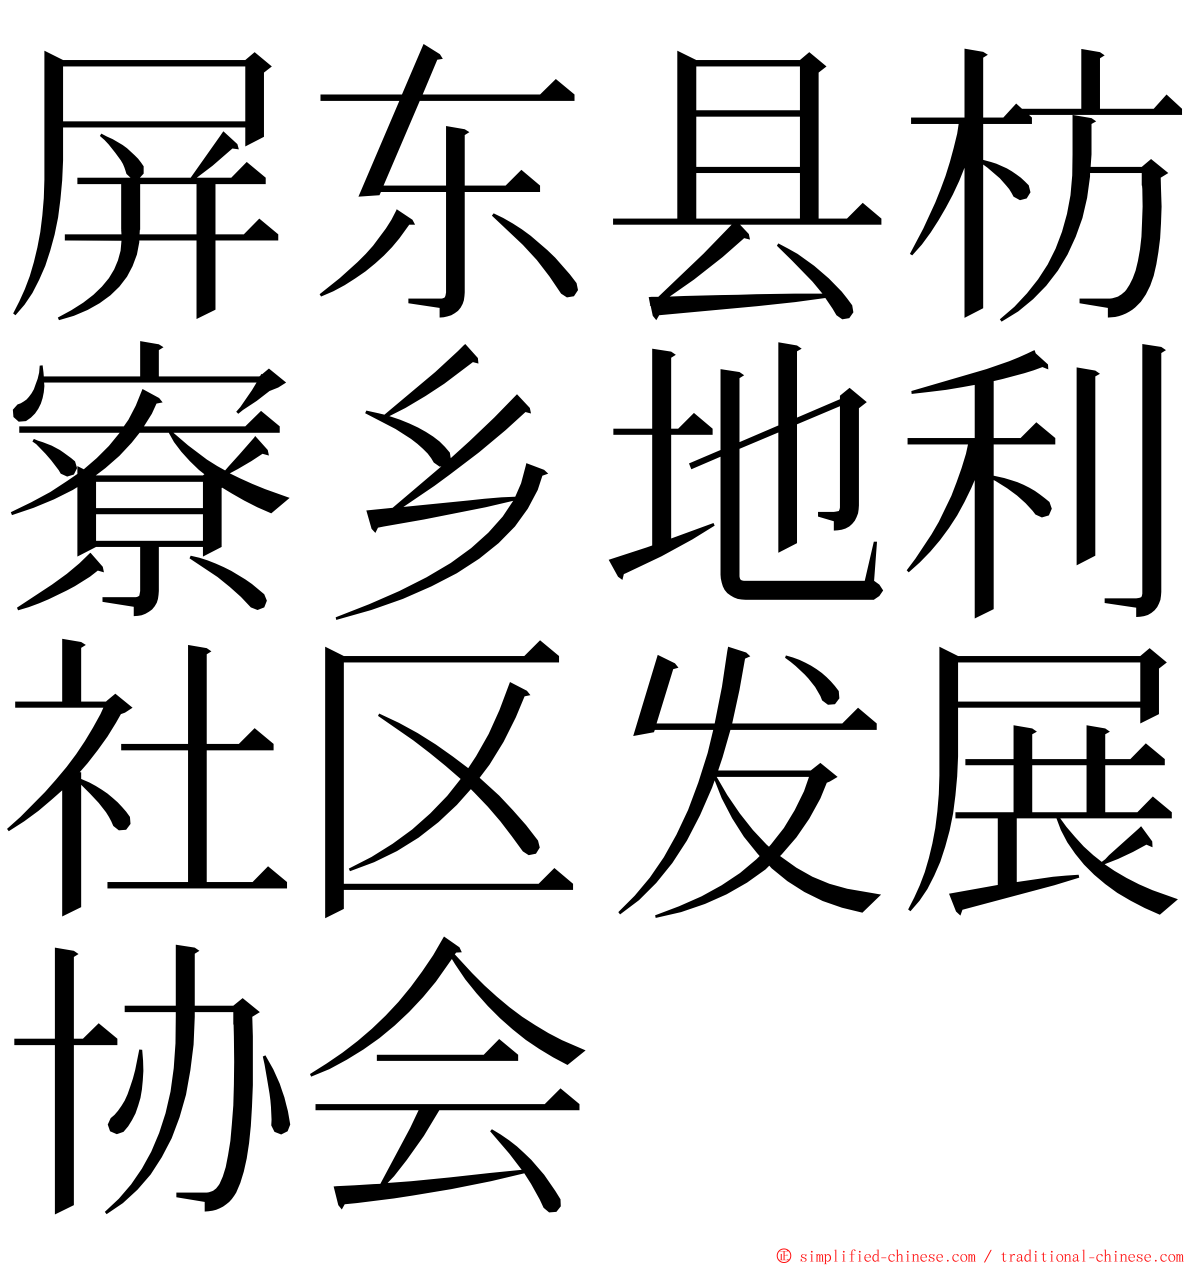 屏东县枋寮乡地利社区发展协会 ming font